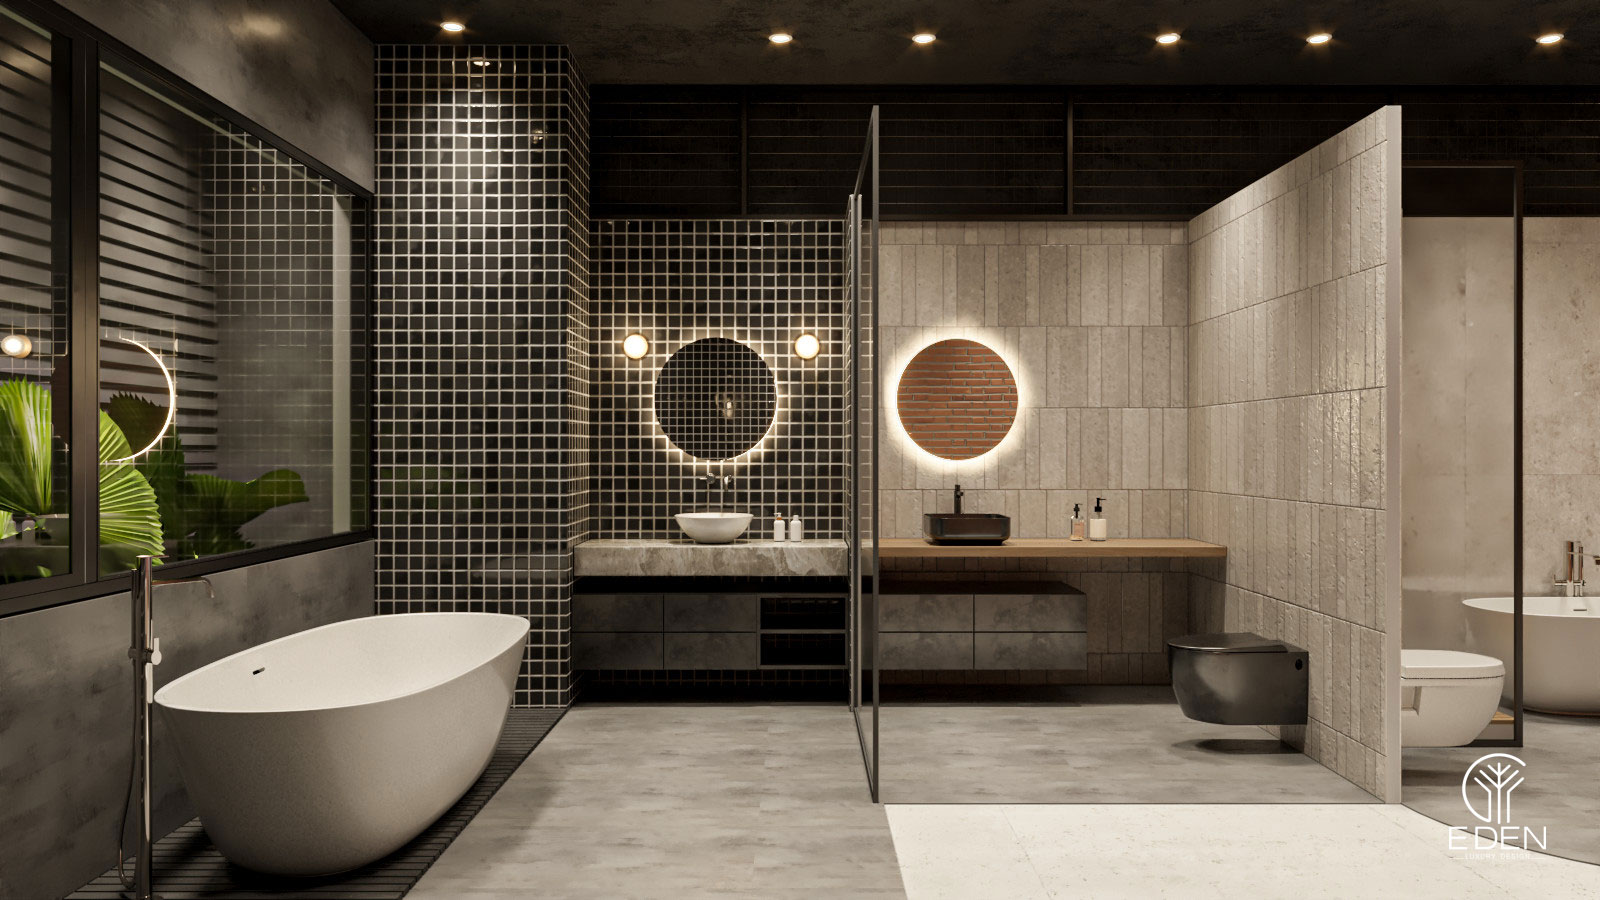 Thiết kế, kiểu phòng tắm tiện nghi được ưa chuộng nhiều nhất năm 2022 - mẫu thứ 1